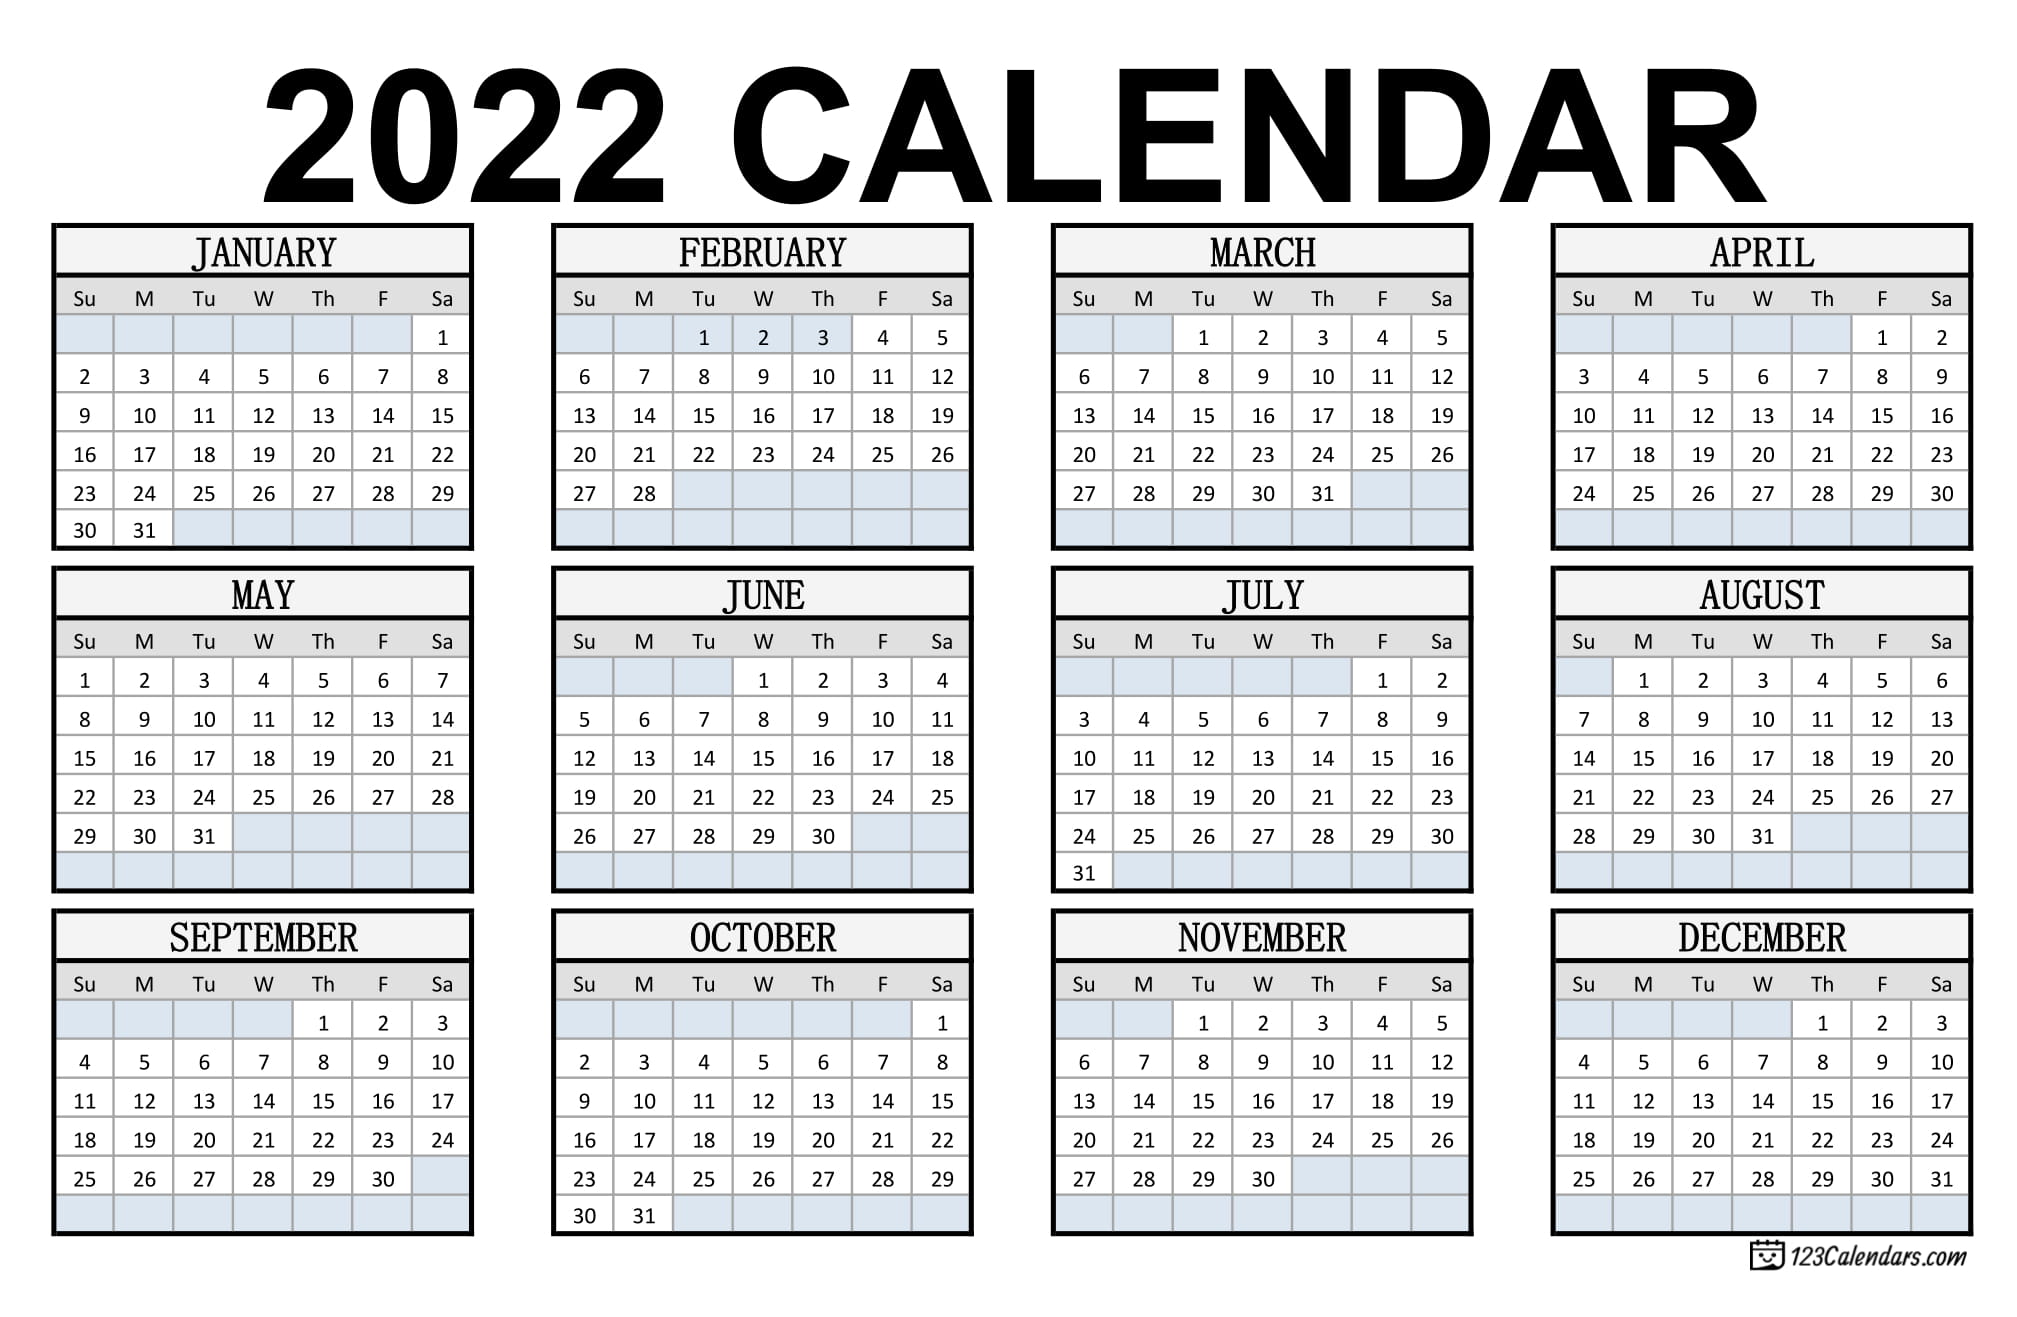 Printable 2022 Calendar Pdf Year 2022 Calendar Templates | 123Calendars.com